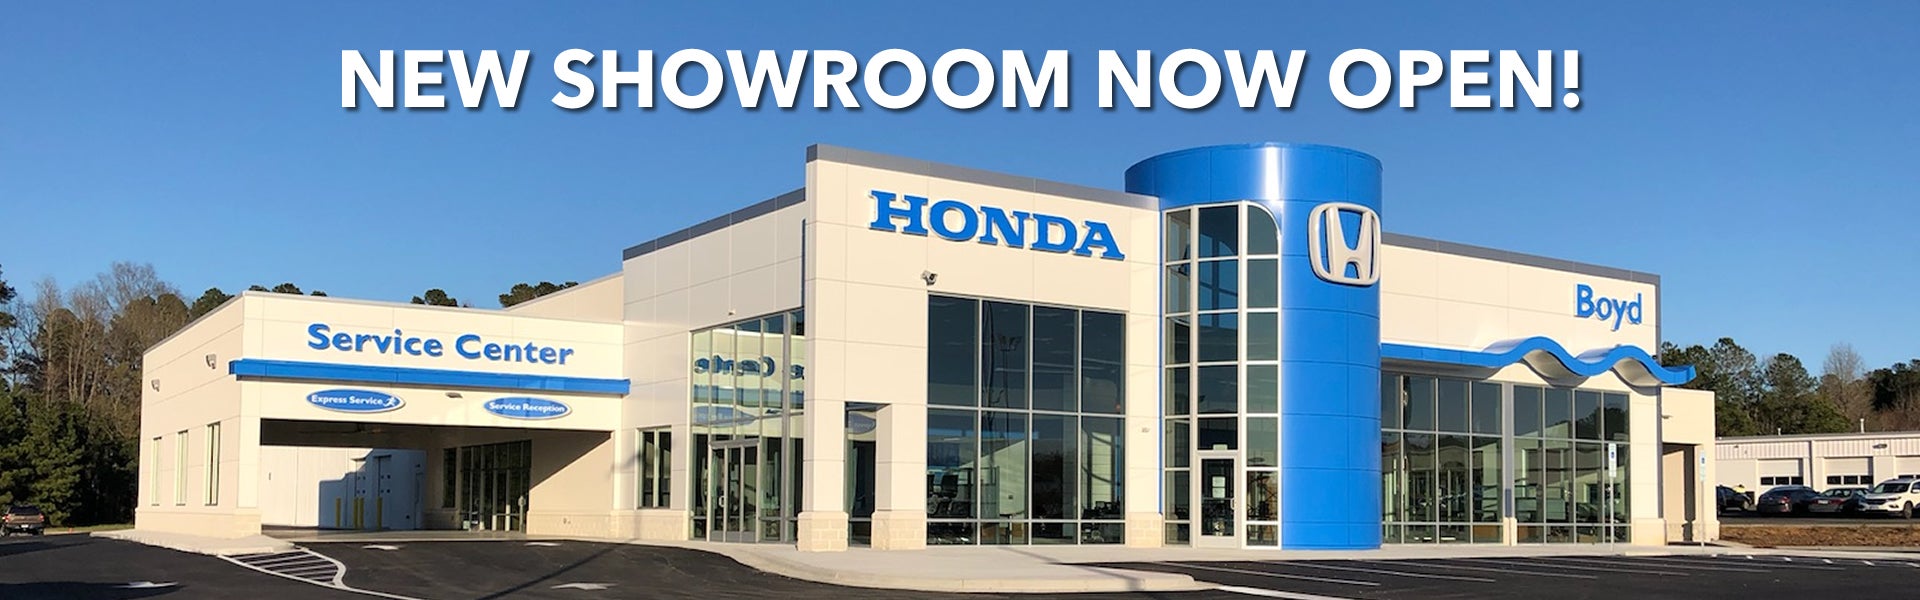 Honda Dealer Building - Boyd Honda